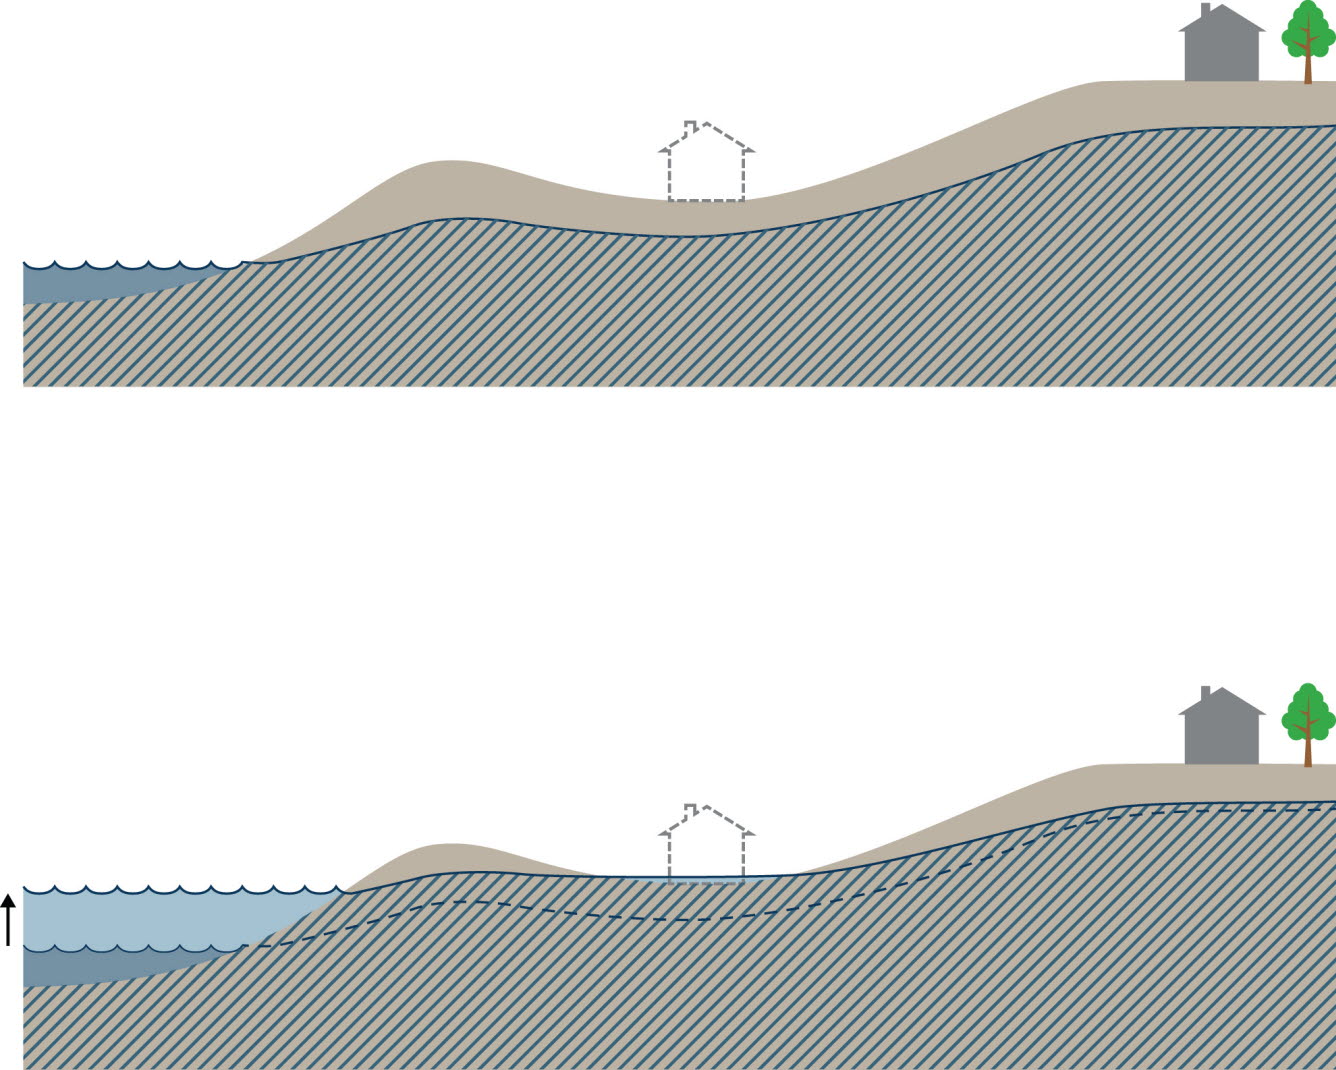 Bildsekvens (två bilder) med skiss av ett markområde vid en strand sett i genomskärning, grundvattnets utbredning i marken är markerad. Den övre bilden visar hur grundvattnets överyta ligger en bit under markytan i hela området, och vid strandkanten ligger grundvattenytan på samma nivå som vattenytan i havet eller sjön. Den nedre bilden visar hur grundvattnet påverkas av höjd vattennivå i havet eller sjön. Grundvattnet har då höjts i hela området, även om effekten avtar med ökande avstånd från stranden. I en svacka når grundvattenytan upp över markytan vilket leder till översvämning av ett hus som ligger där. Illustration: Boverket / Altefur Development